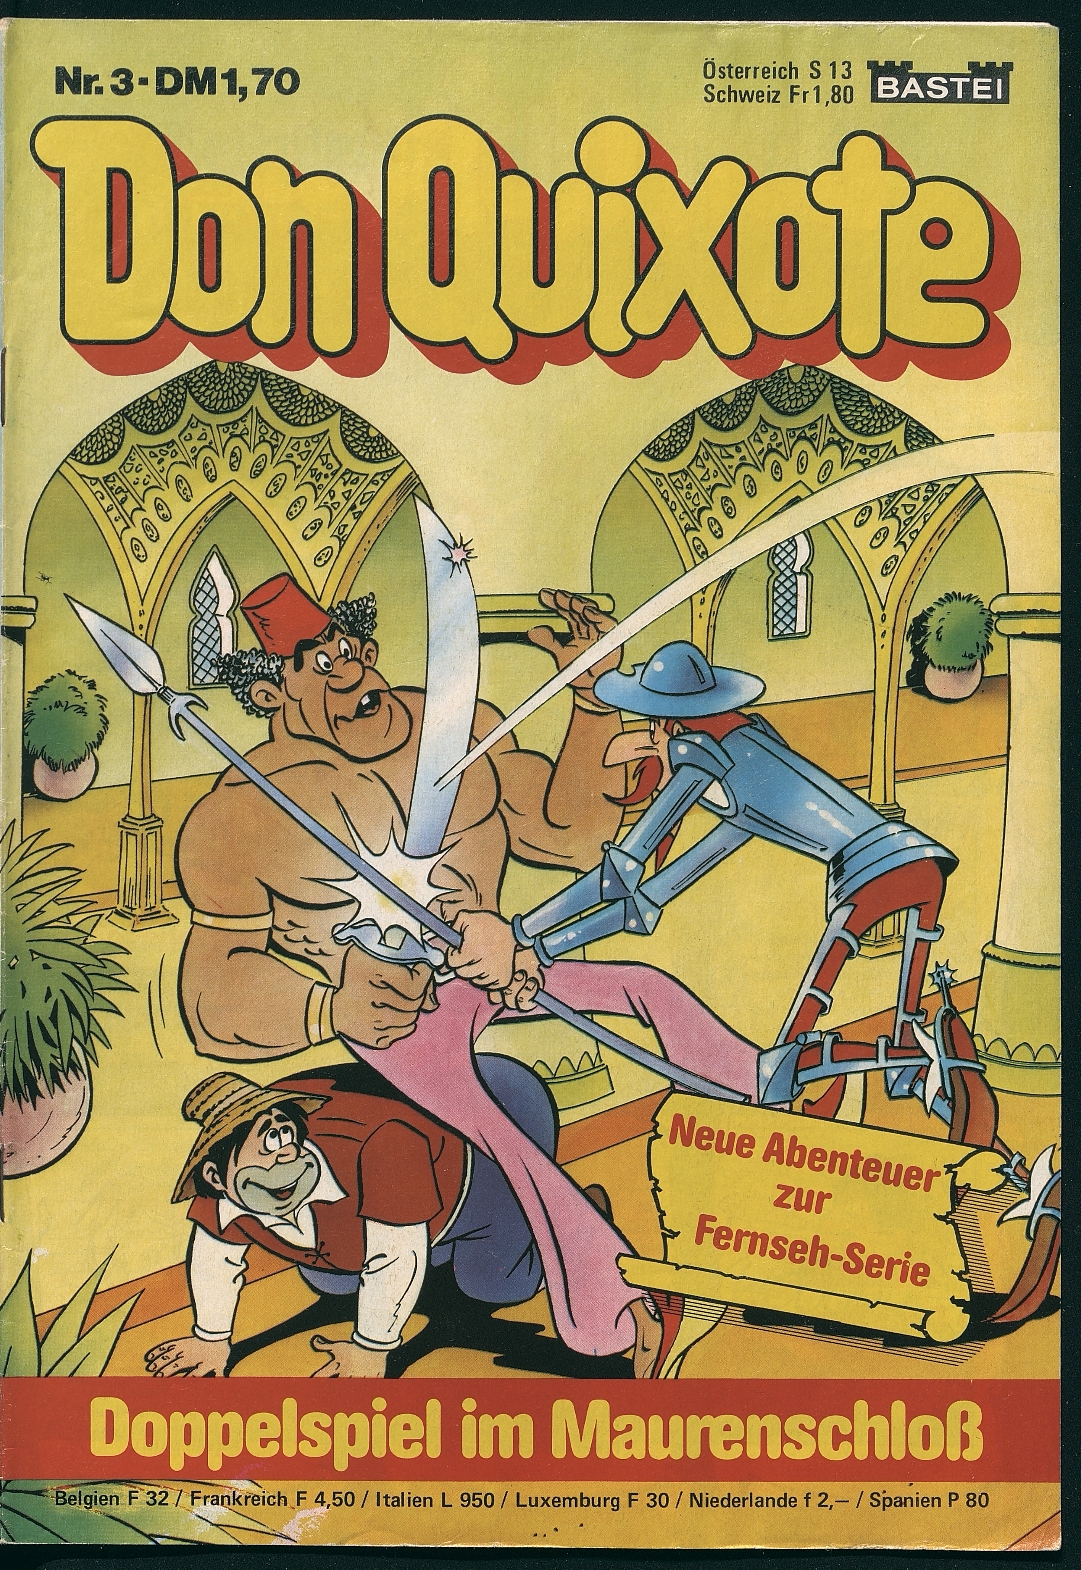 Don Quixote : der trick des falschen grafen: neue abenteuer zur Fernseh-Serie. köln : Bastei, [1981] 